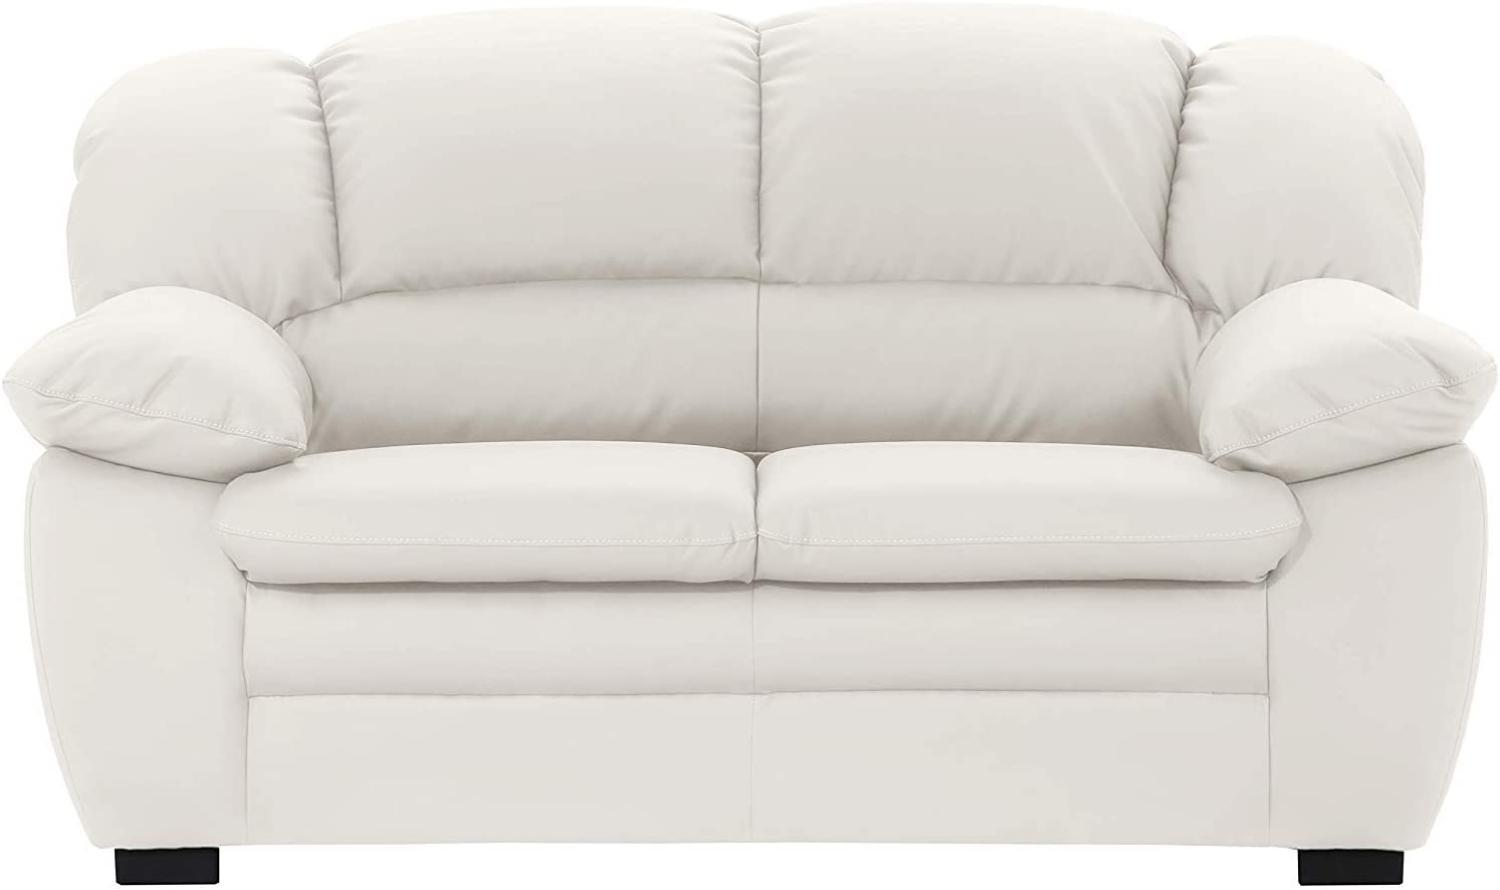 Mivano 2-Sitzer Sofa Casino, Bequeme Ledercouch mit moderner Kontrastnaht, 159 x 88 x 92, Kunstleder Weiß Bild 1